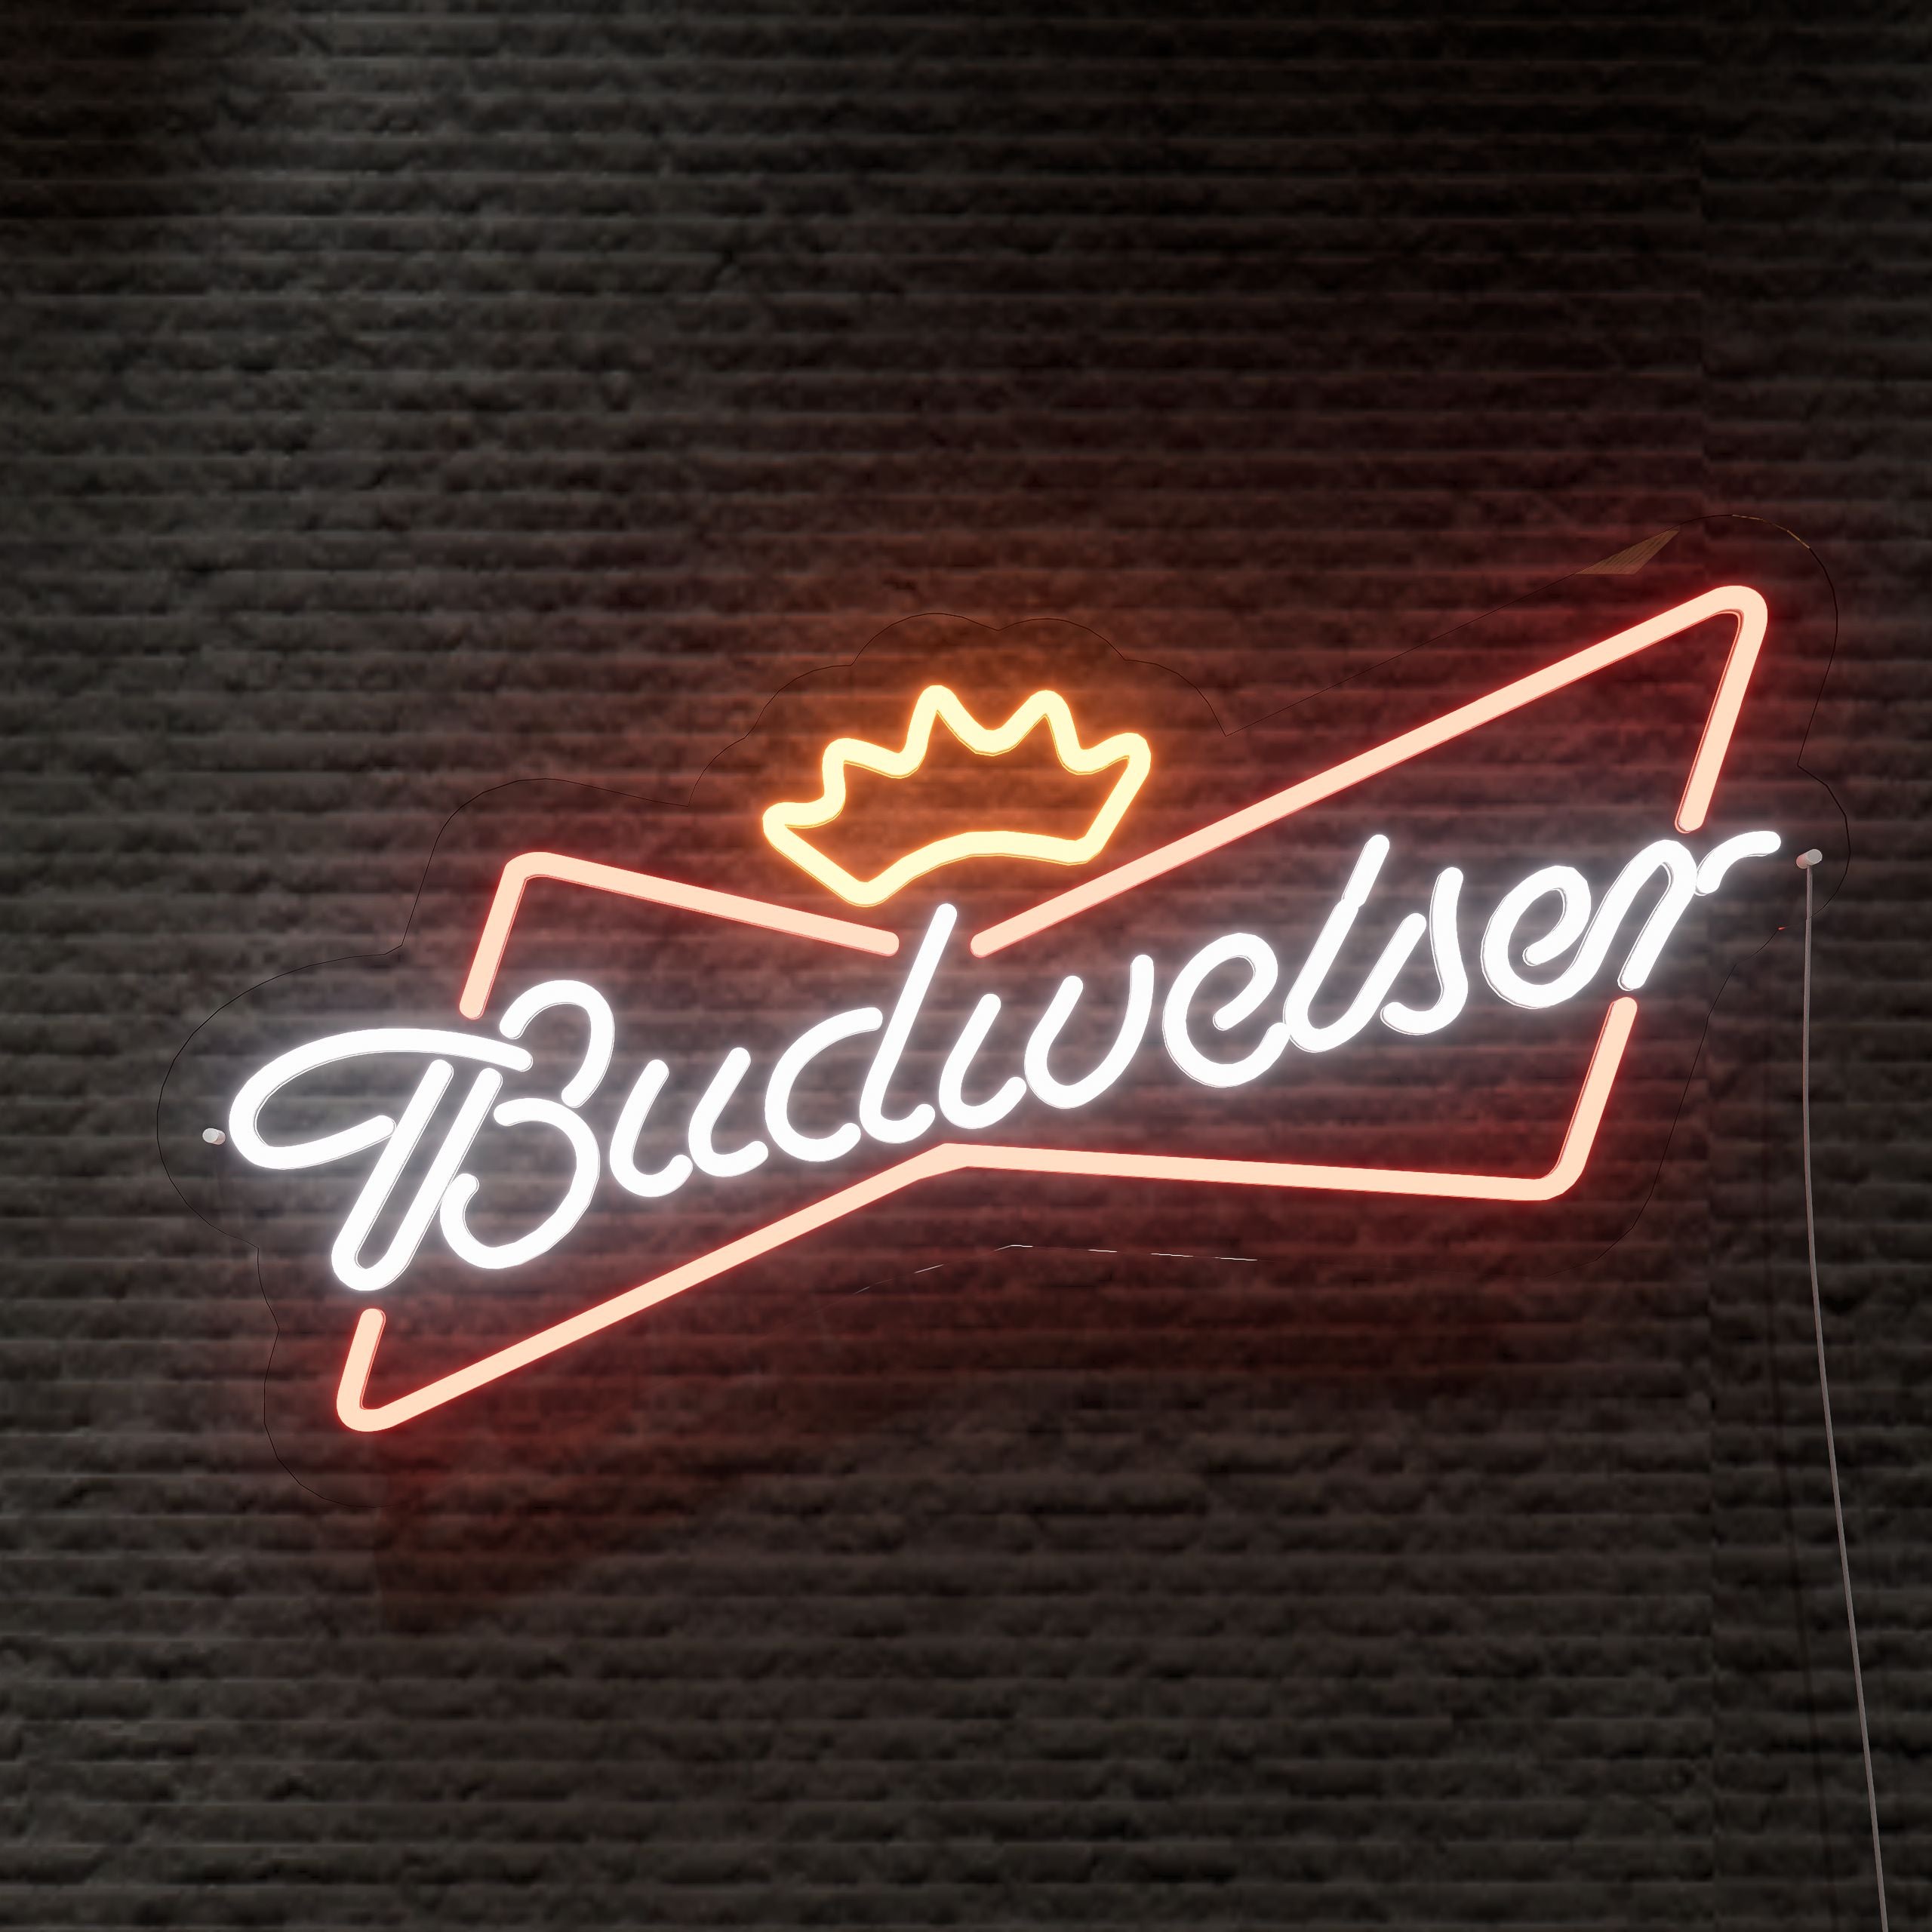 tbudweiser-neon-signs-1-Neon-sign-Lite